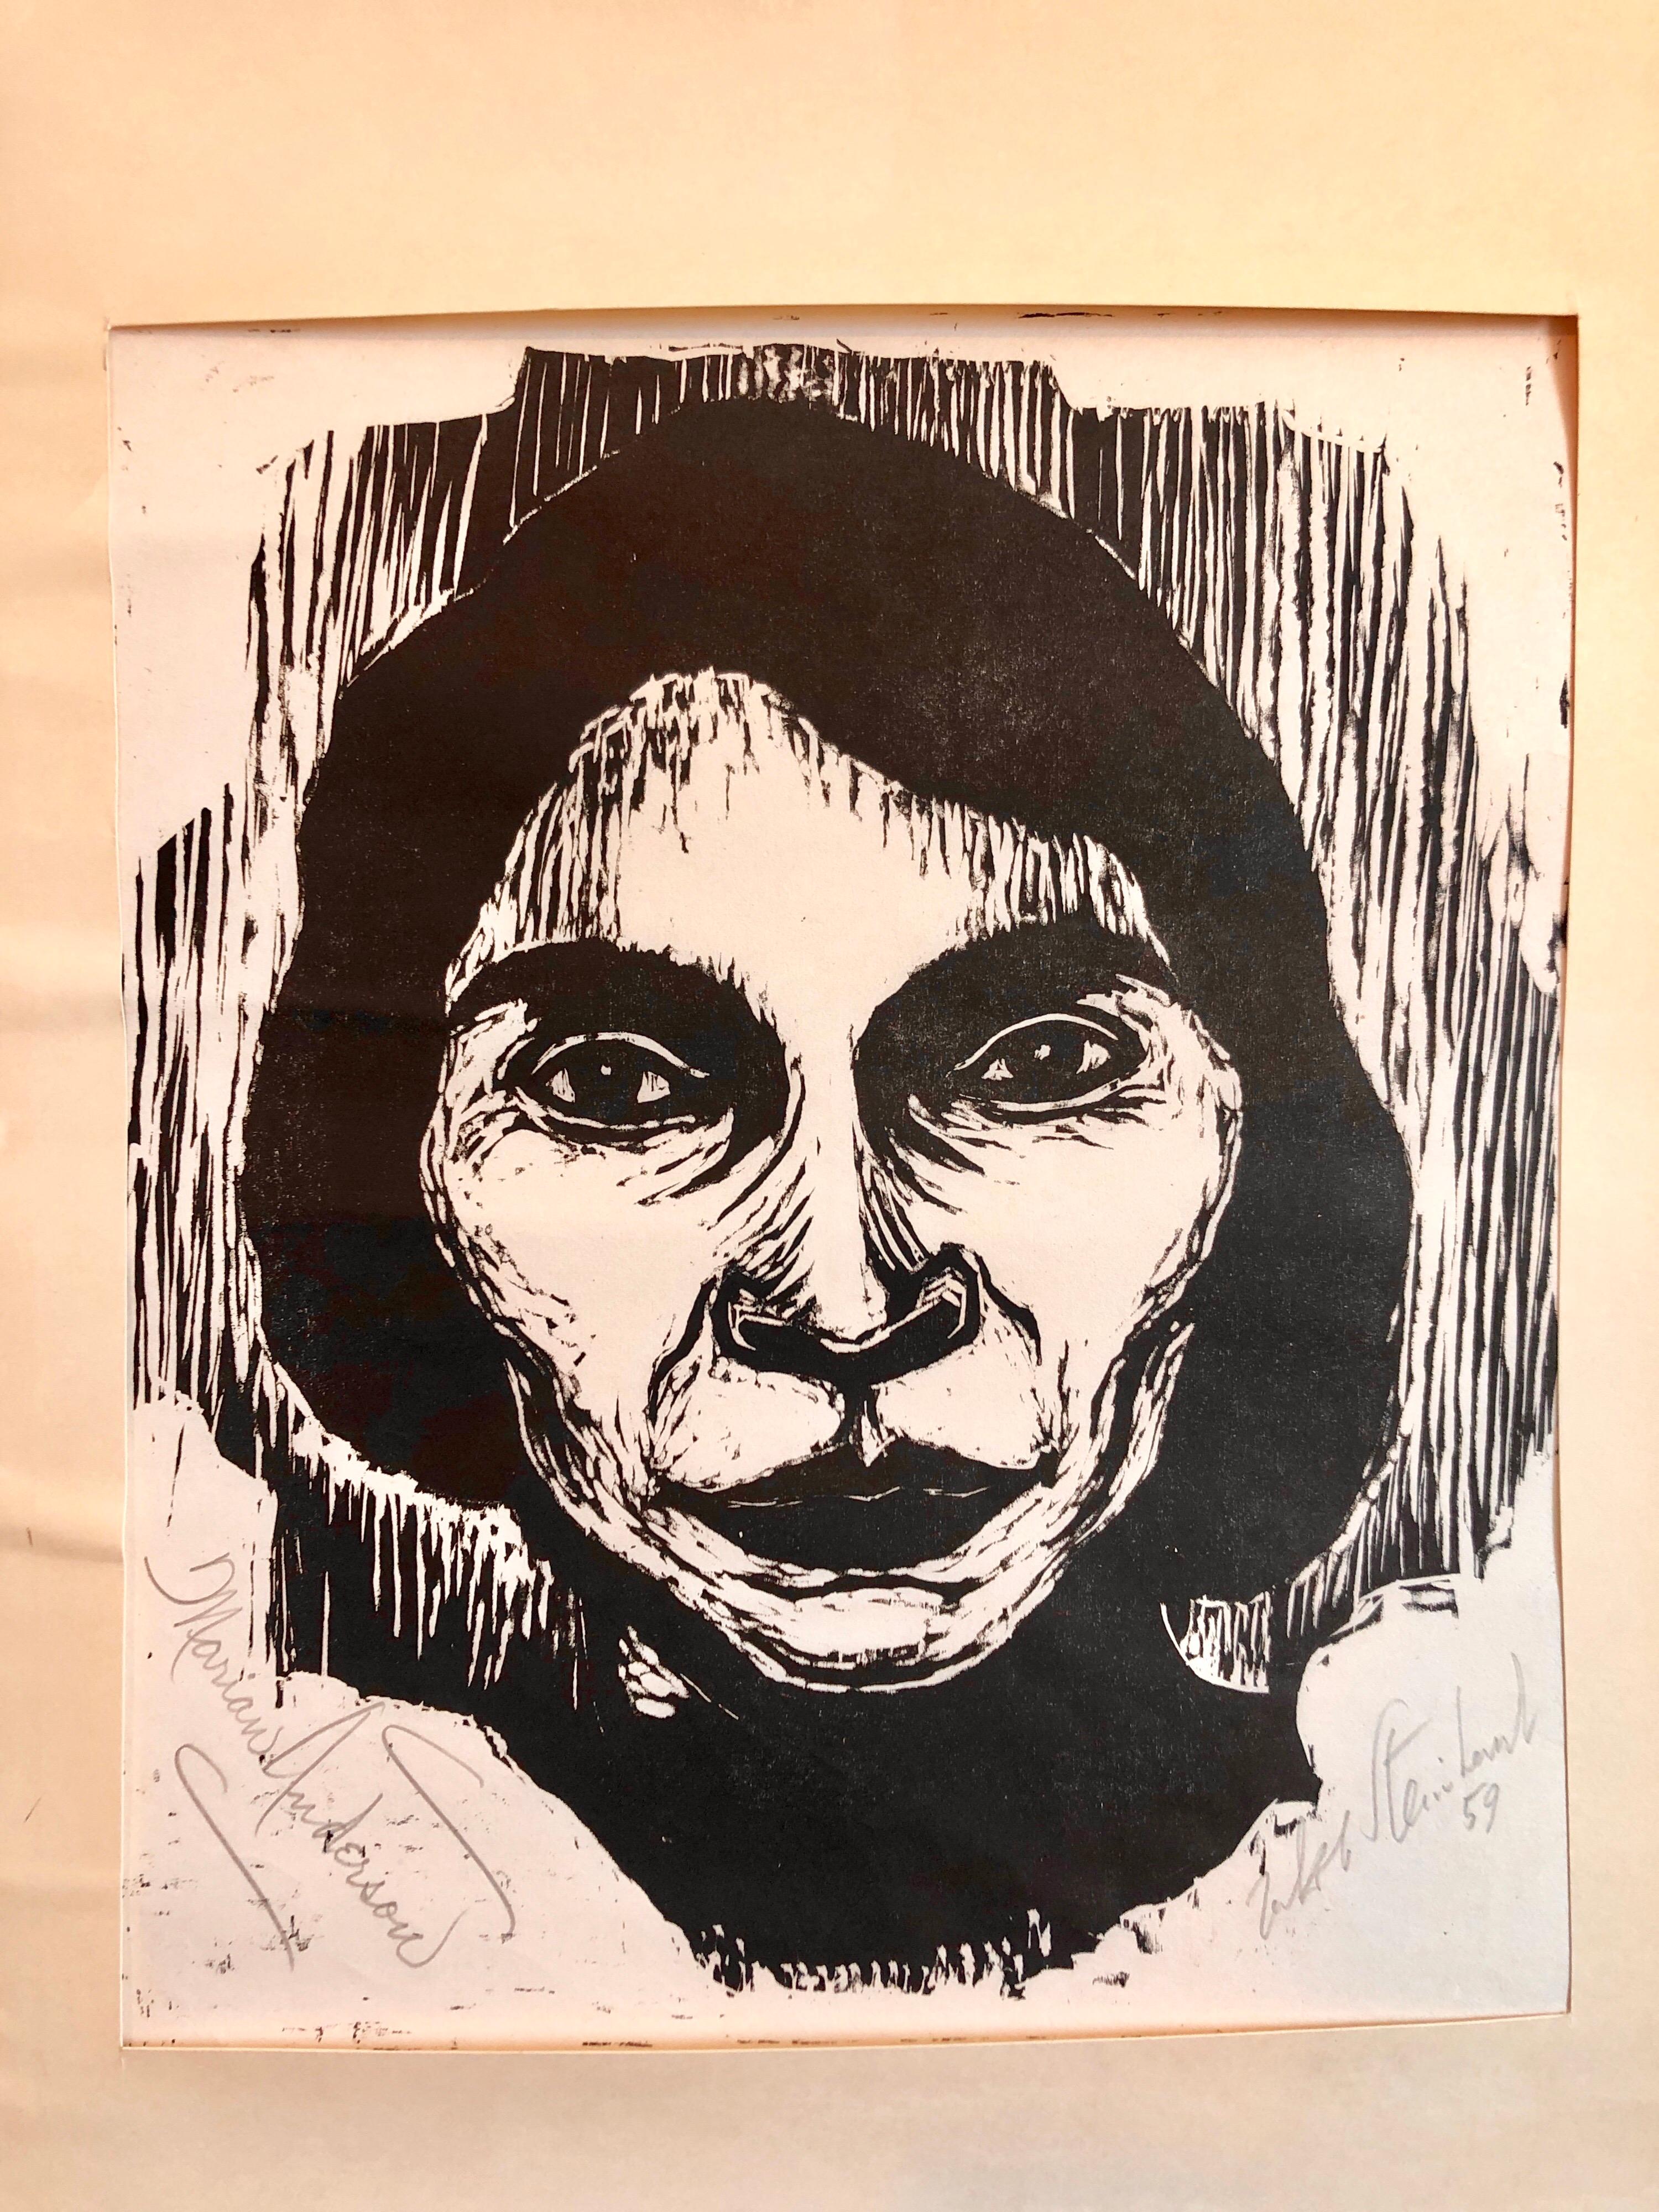 Steinhardt Holzschnitt Marian Anderson Signierte afroamerikanische, israelische Bezalel-Kunst (Schwarz), Portrait Print, von Jacob Steinhardt